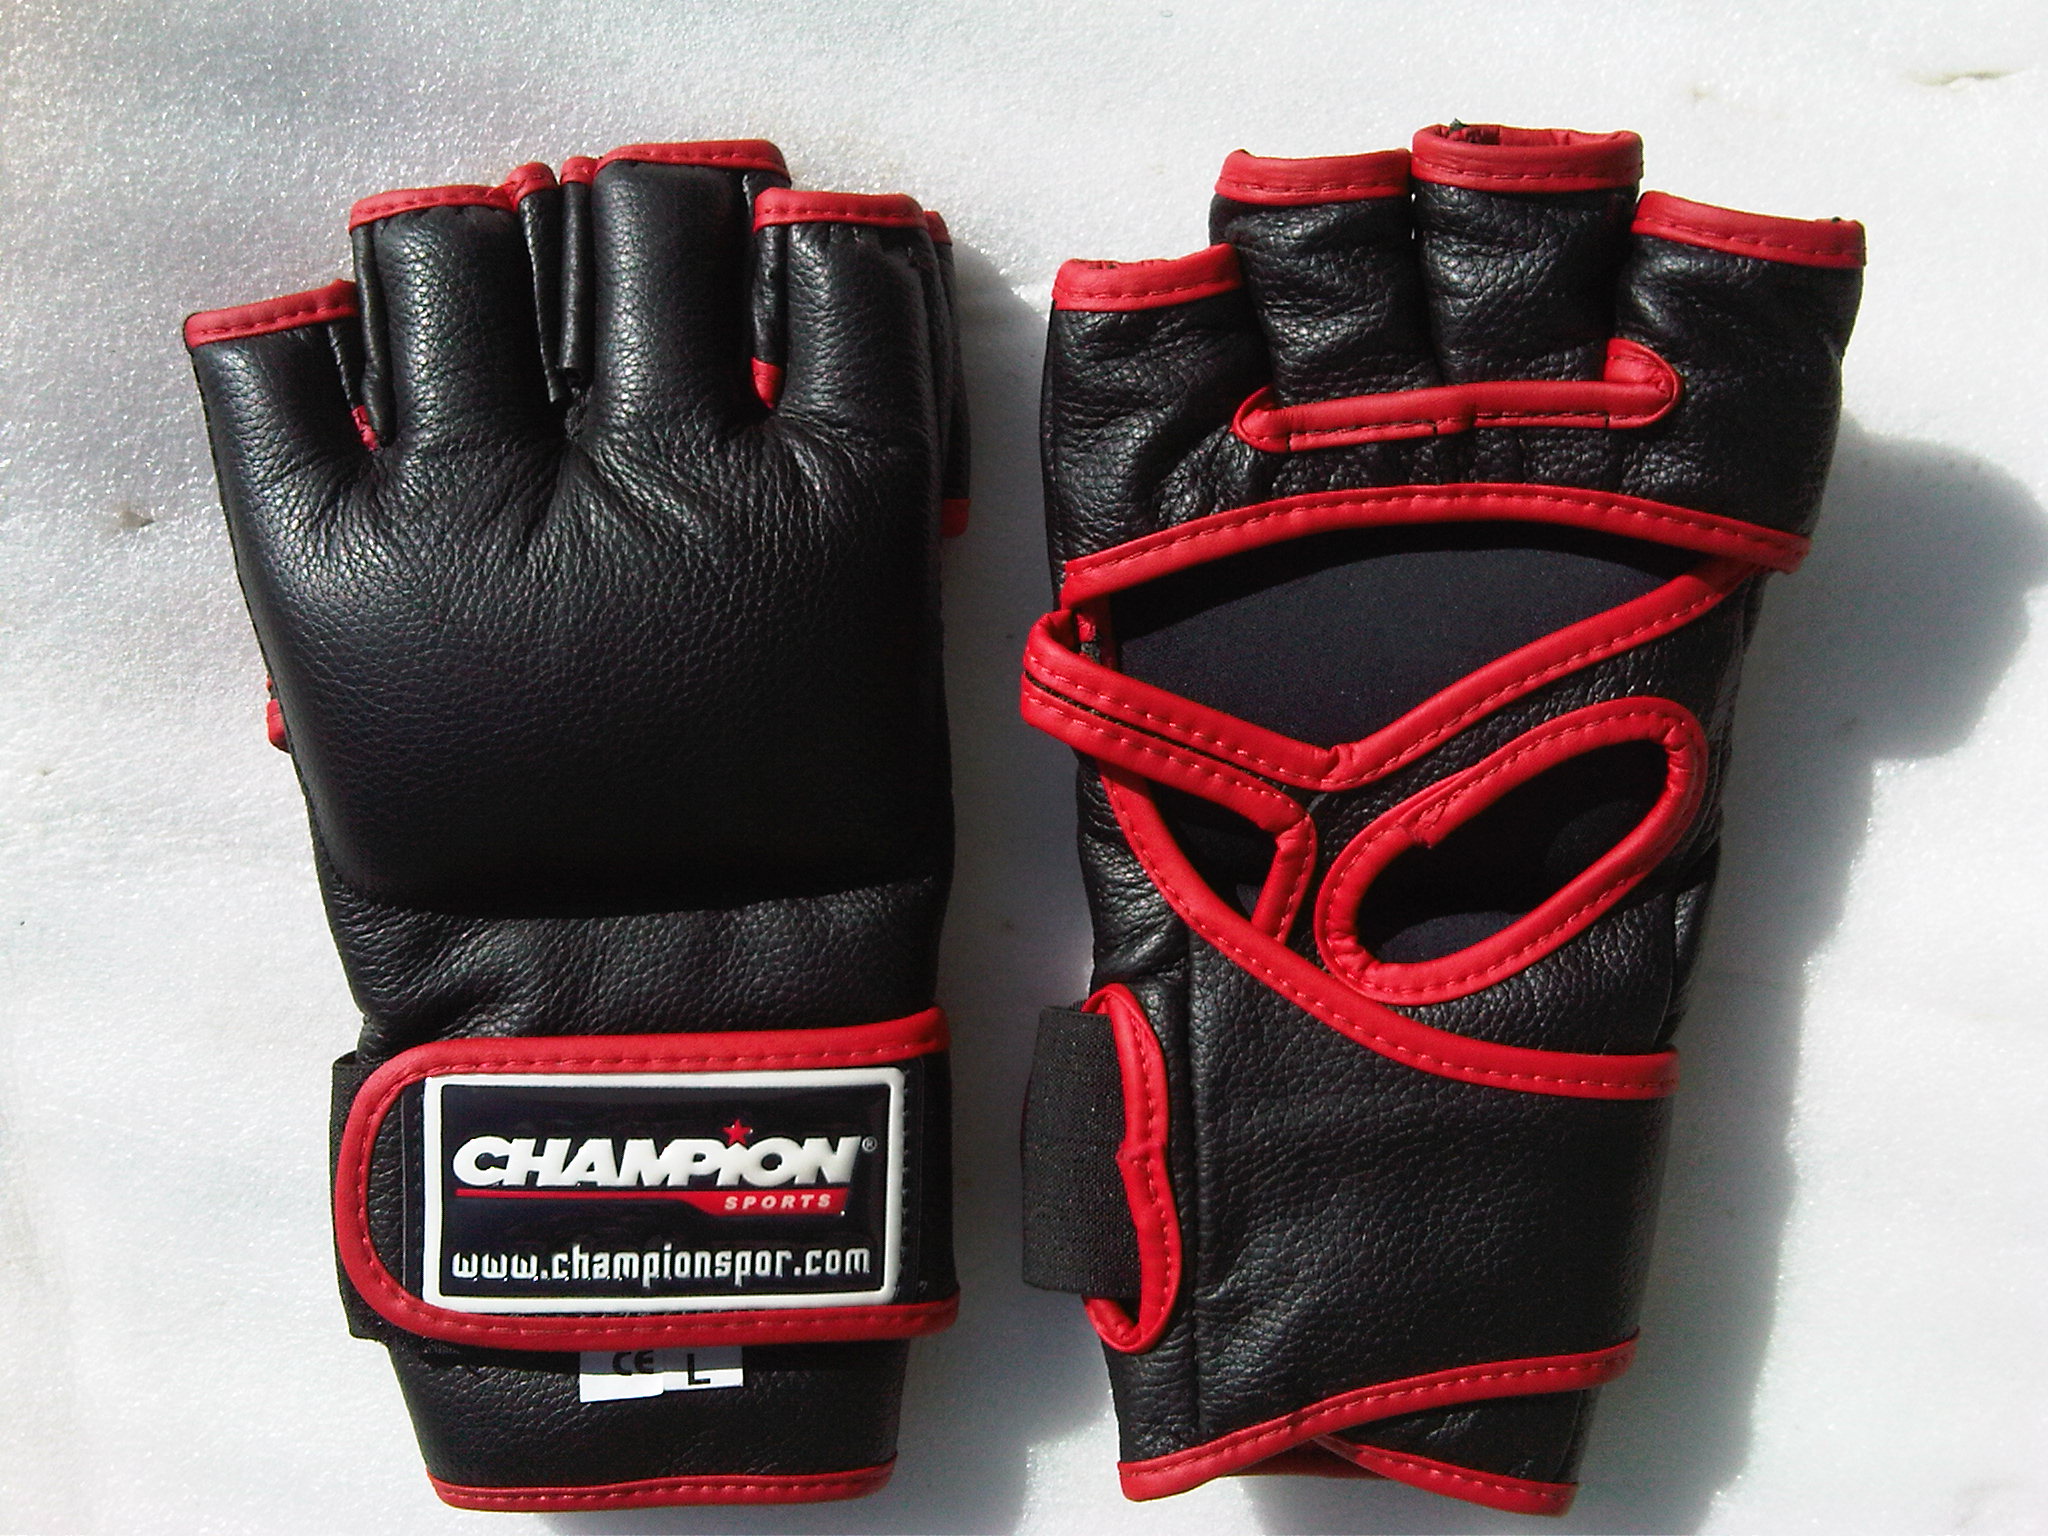 Перчатки для MMA (Mixed Martial Arts, боев без правил, миксфайта)